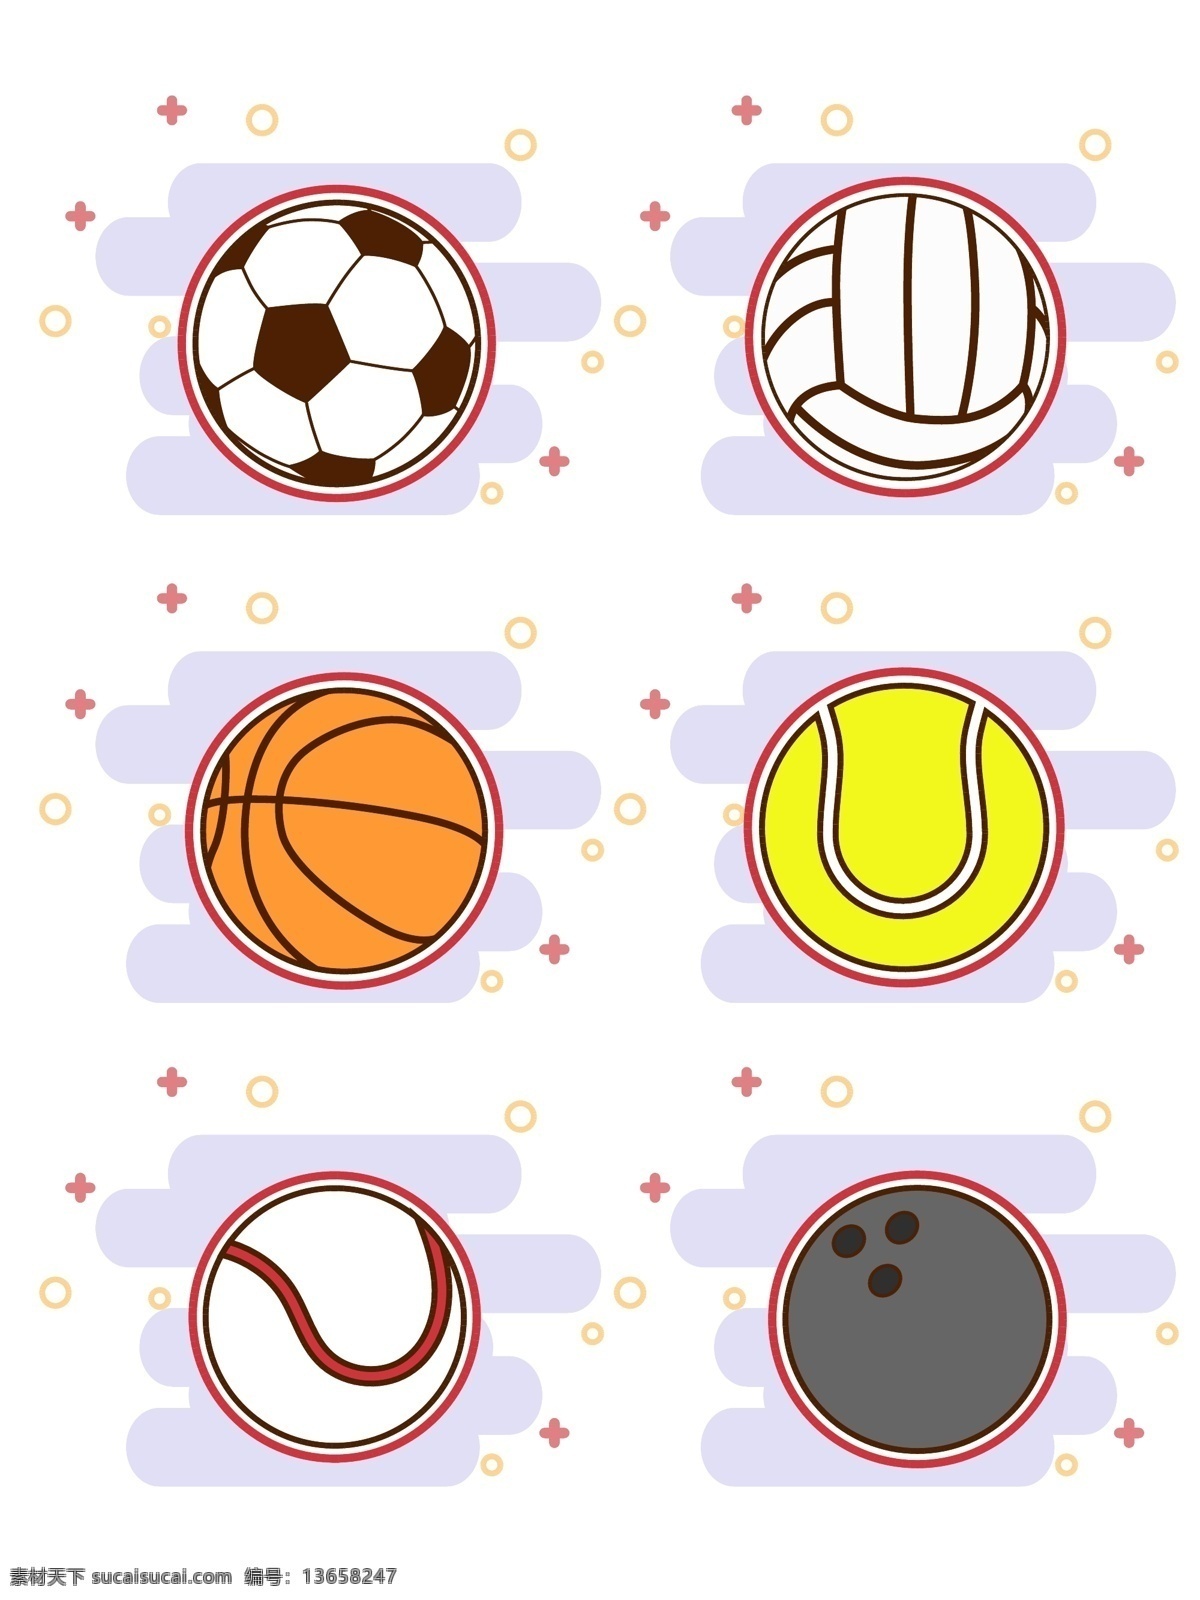 原创 简约 矢量 卡通 球类运动 商用 足球 篮球 网球 棒球 排球 保龄球 运动 体育 球类